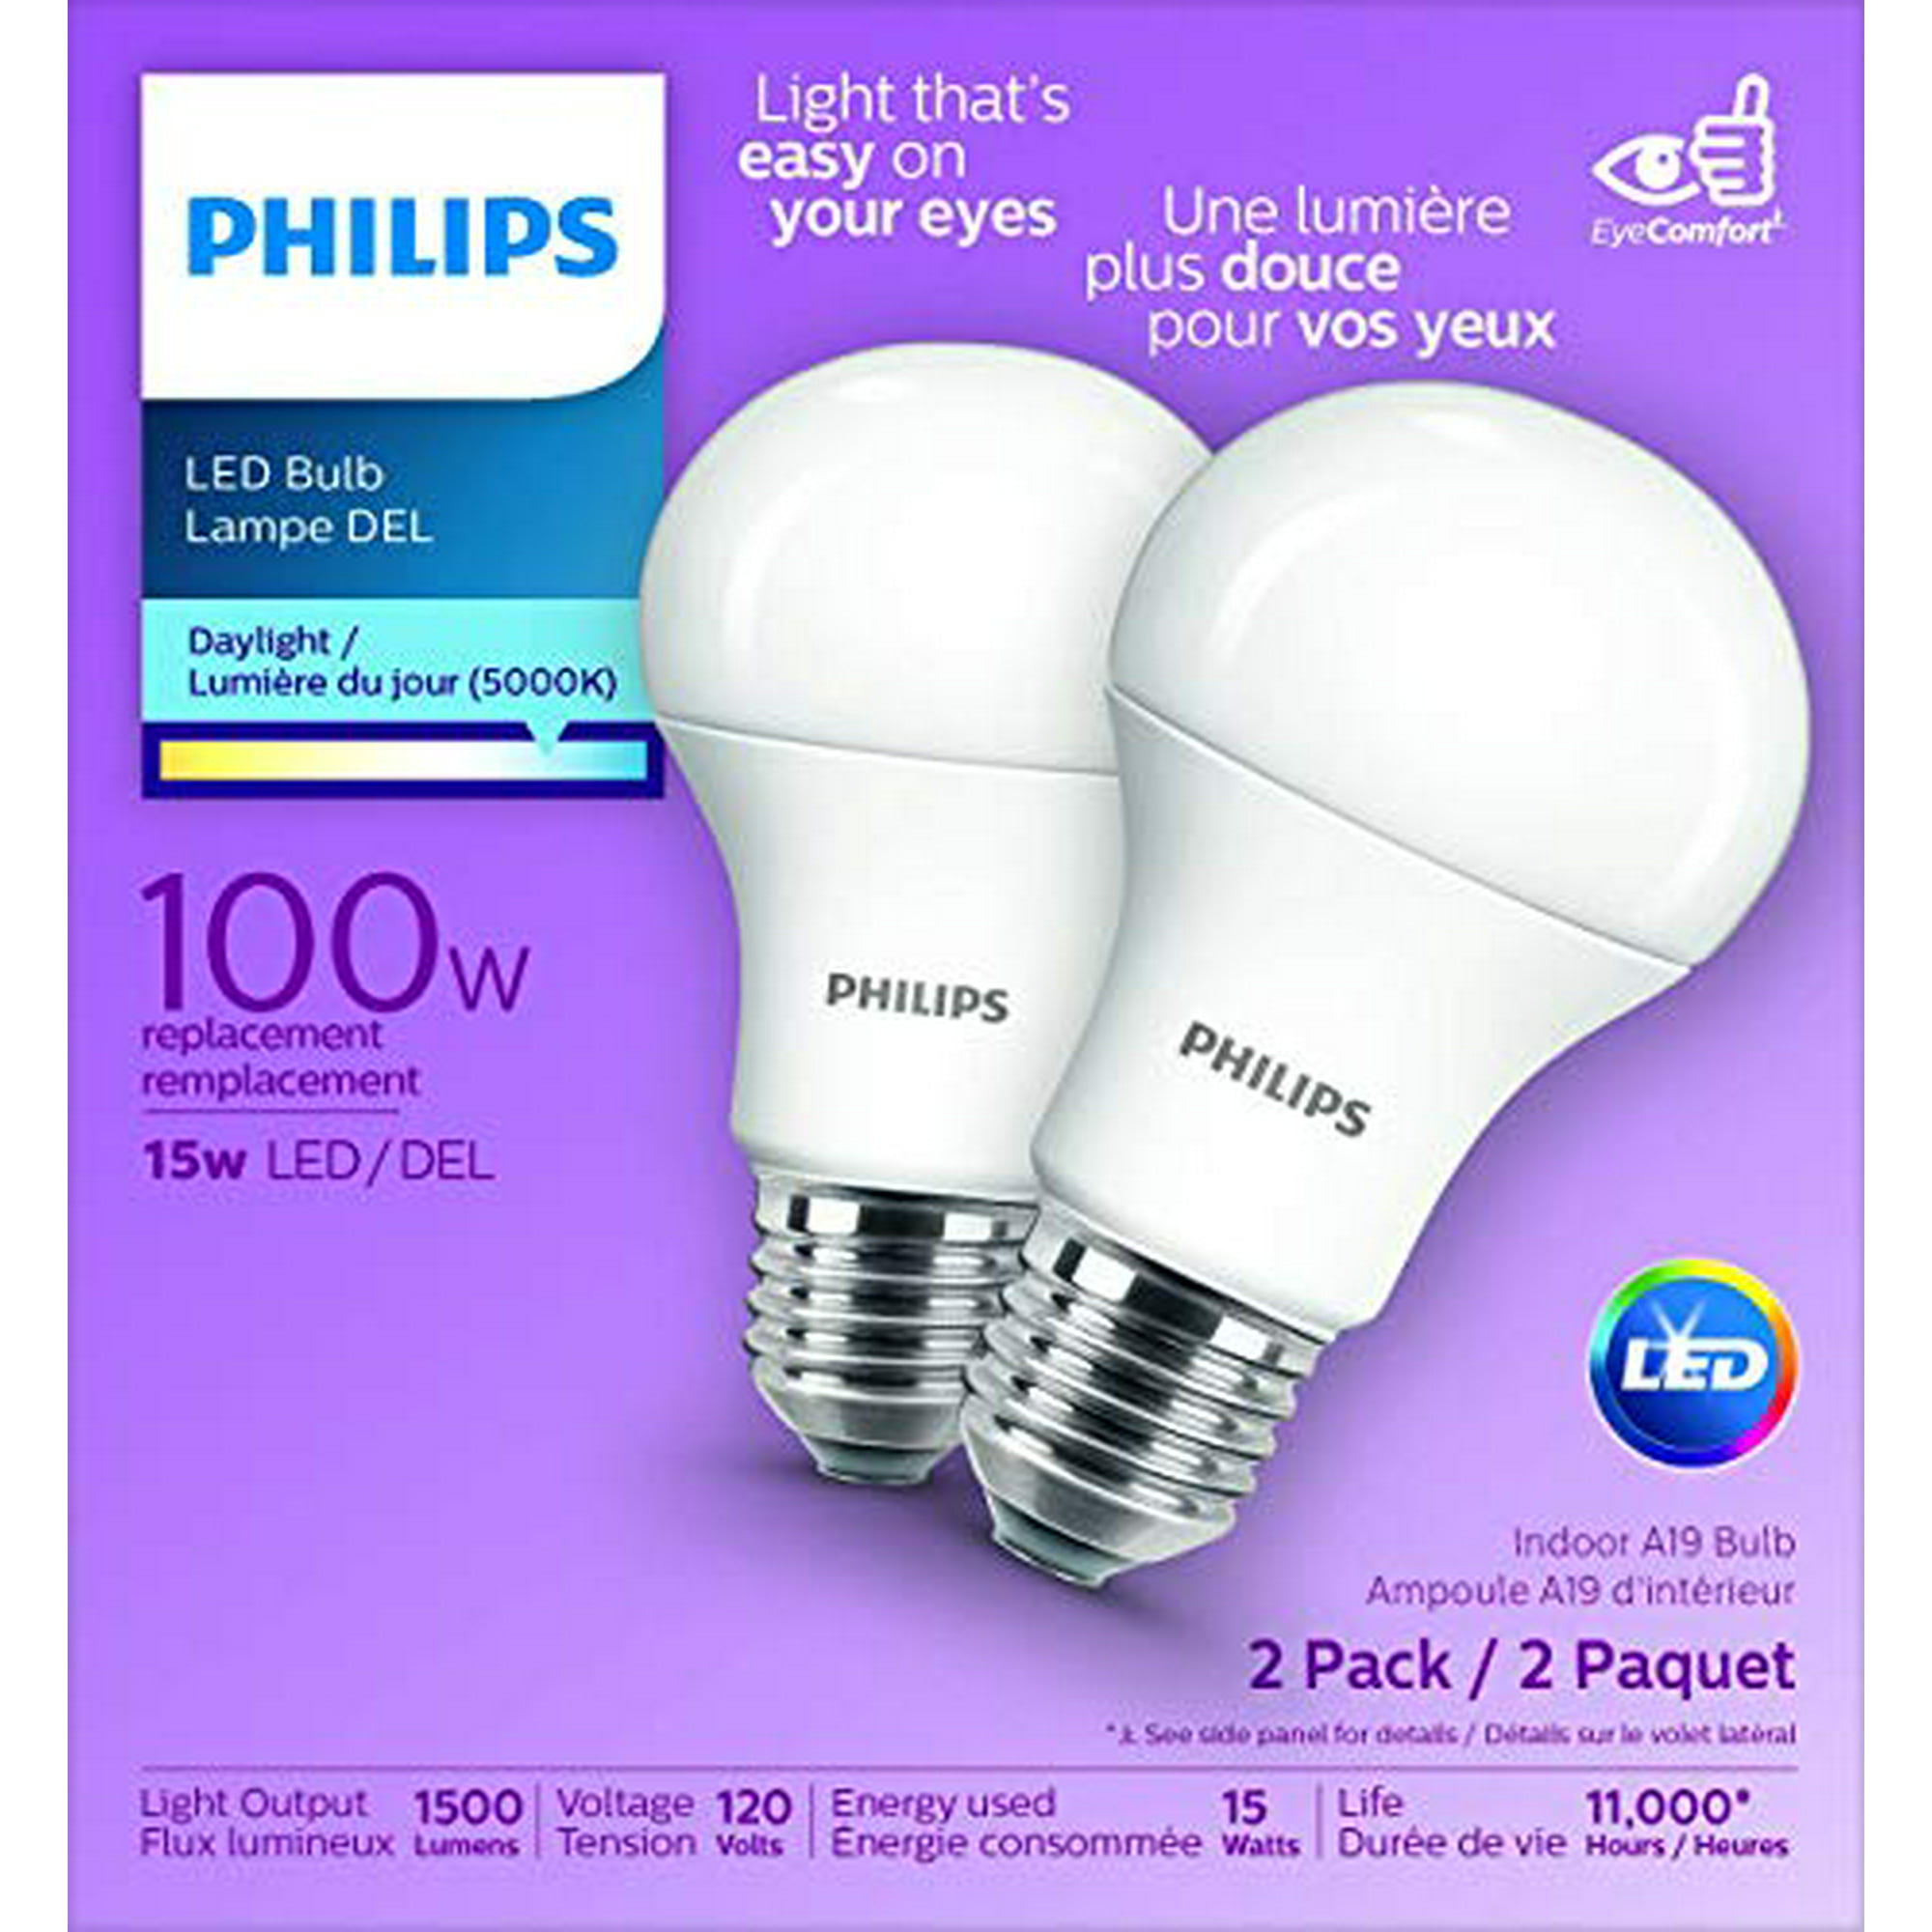 Филипс 100. Philips led. Philips 100. Philips 100w10r UVA. Прожектор Филипс 100 ватт.